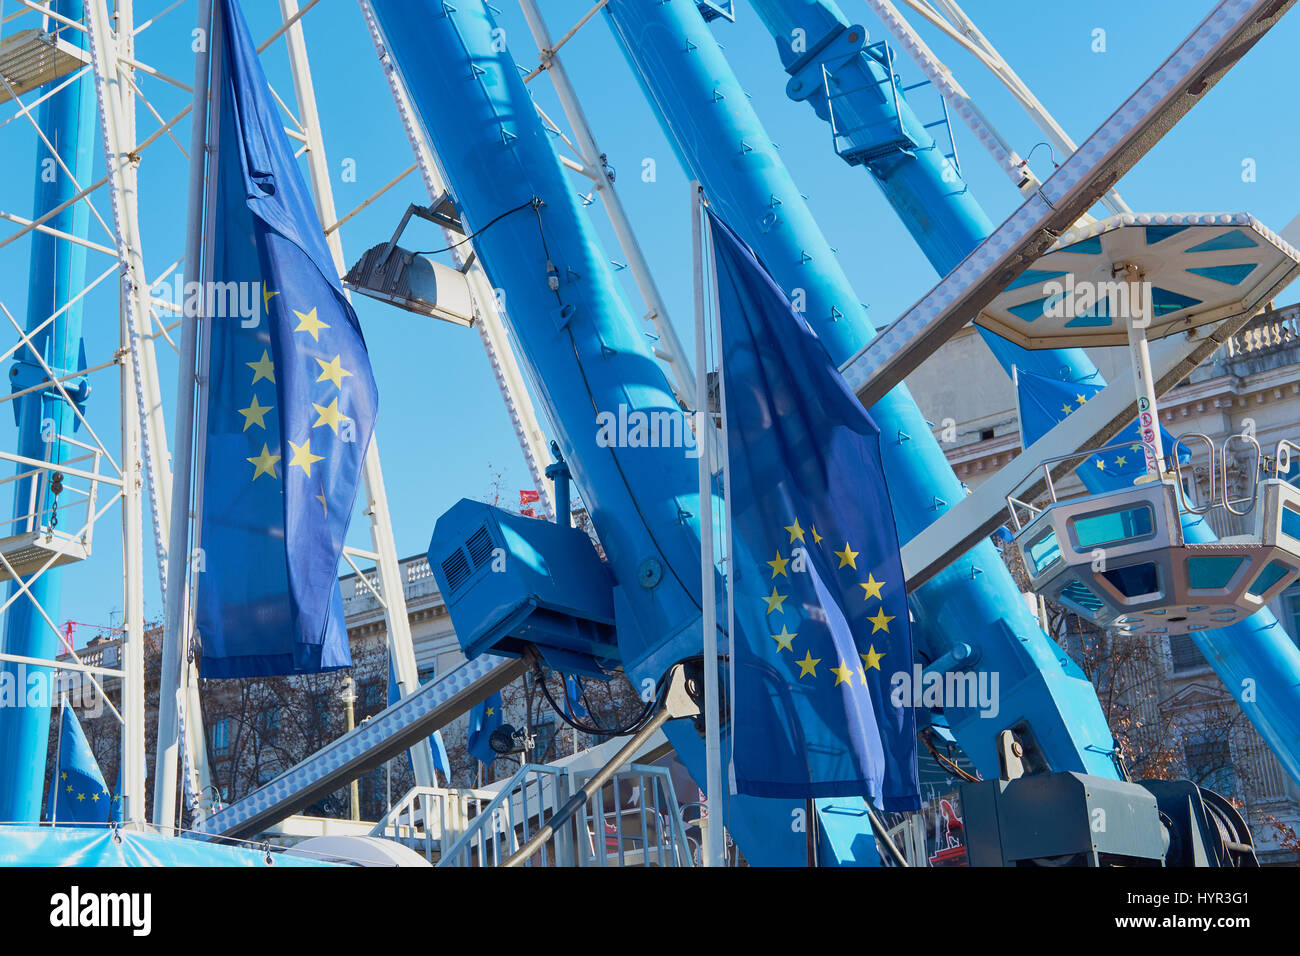 Grande roue et drapeau européen dans la Place Bellecour, Lyon, Auvergne-Rhone-Alpes, France, Europe. Banque D'Images